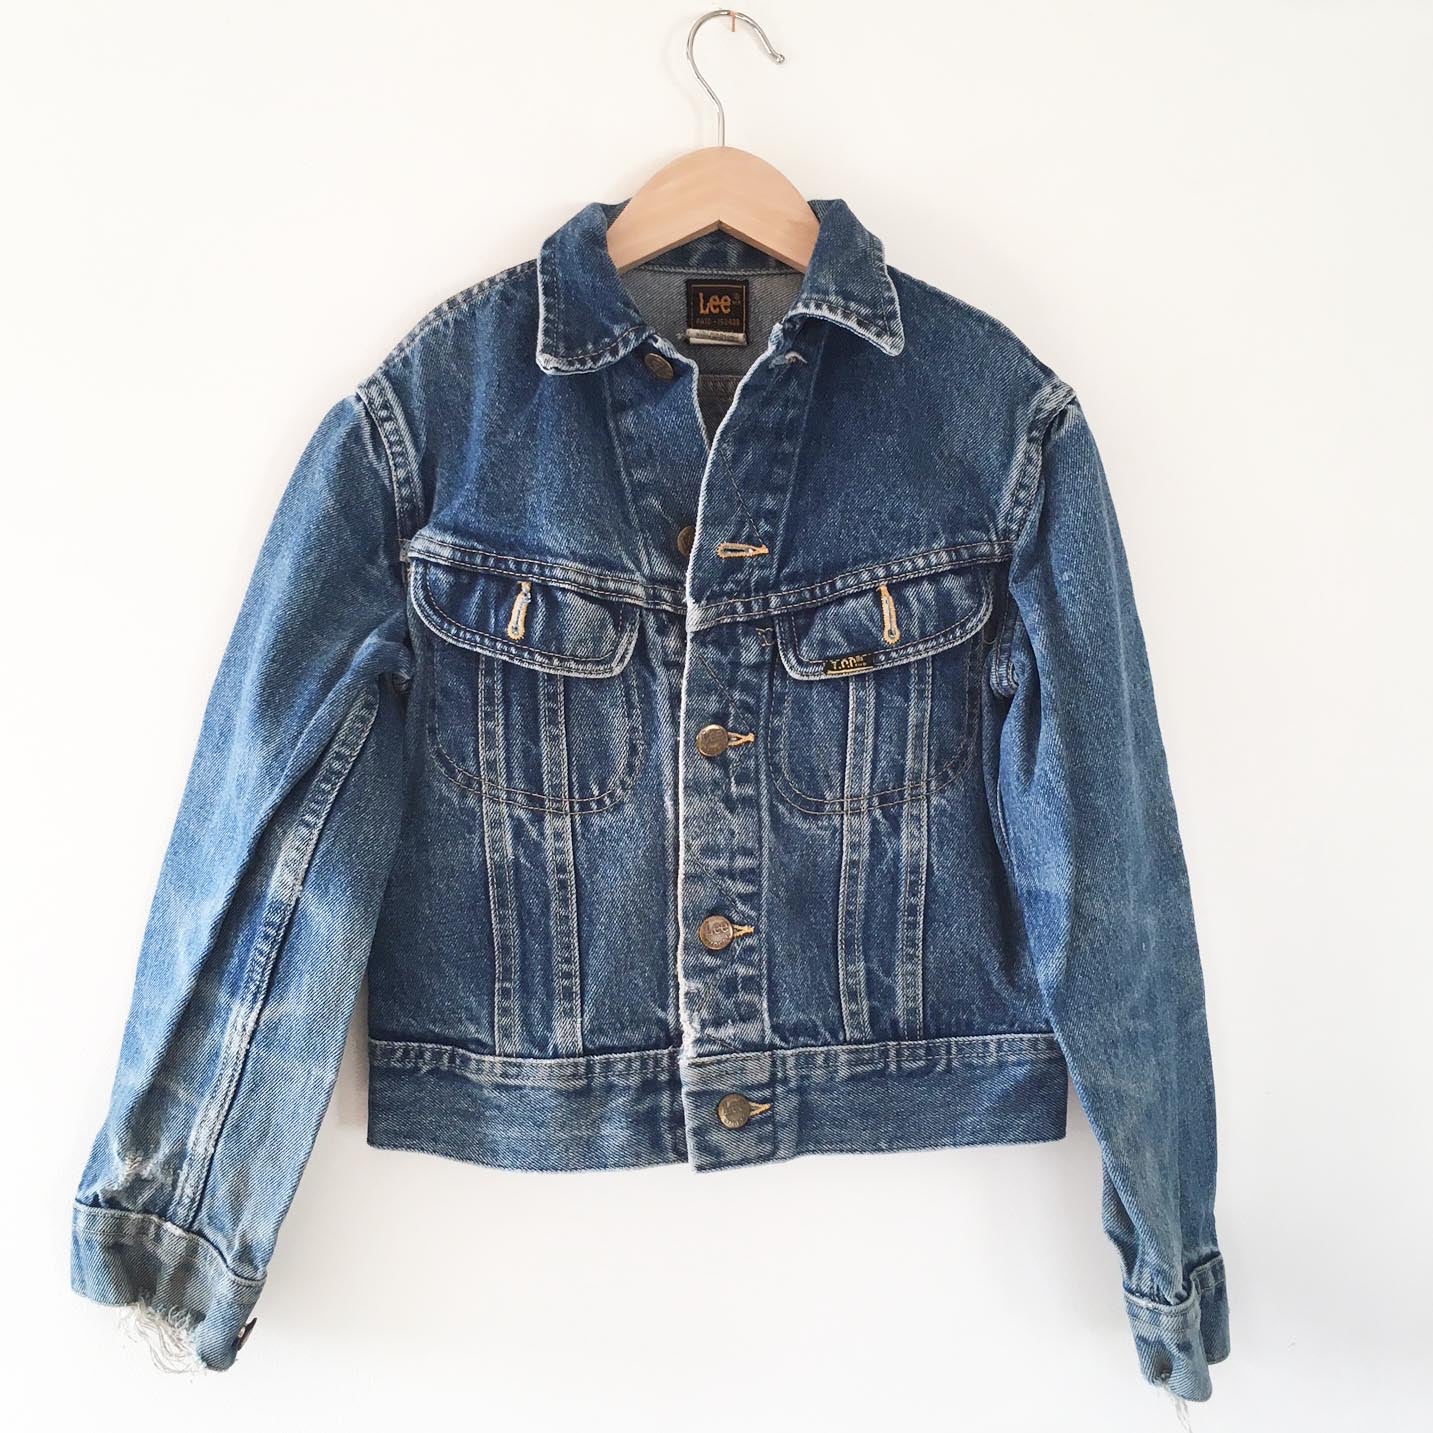 Vintage Preloved Lee jacket size 8-10